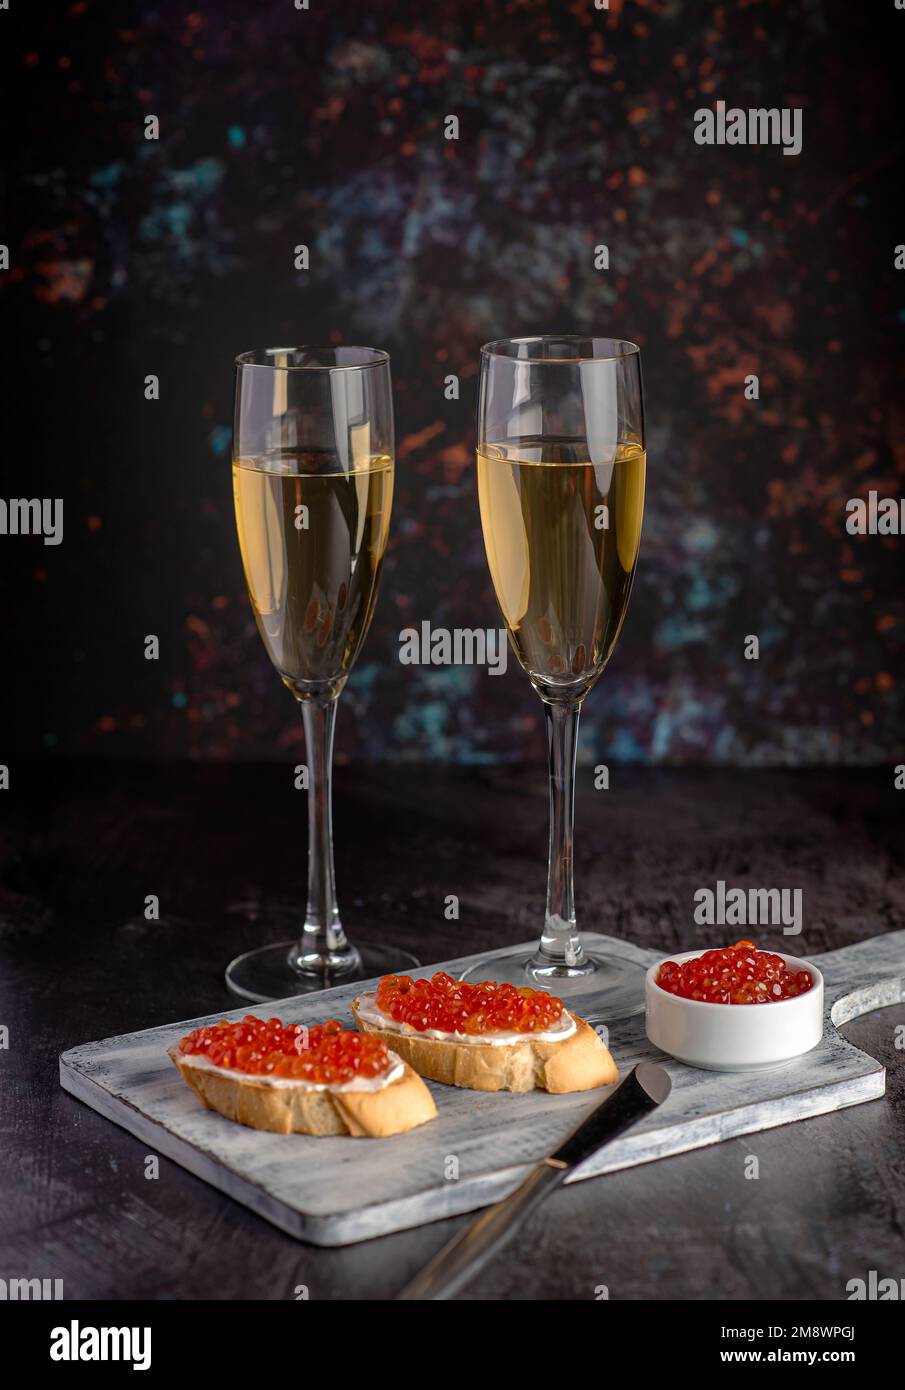 Fotografia alimentare di sandwich con caviale, salmone rosa, vino bianco, champagne, antipasto, delicatezza Foto Stock